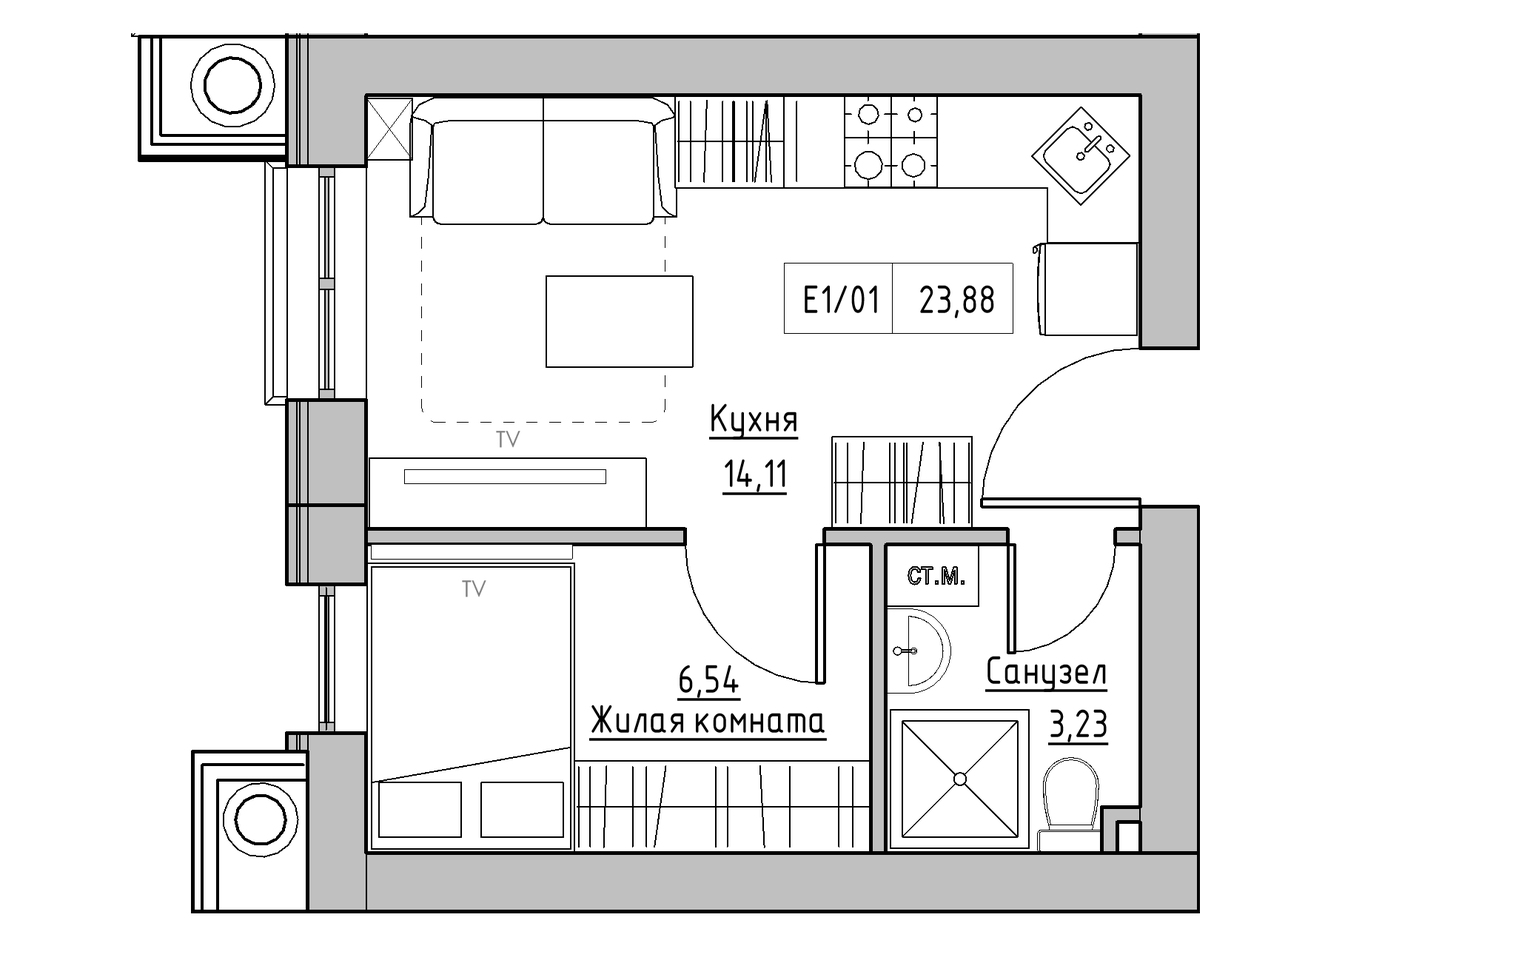 Планировка 1-к квартира площей 23.88м2, KS-009-04/0003.